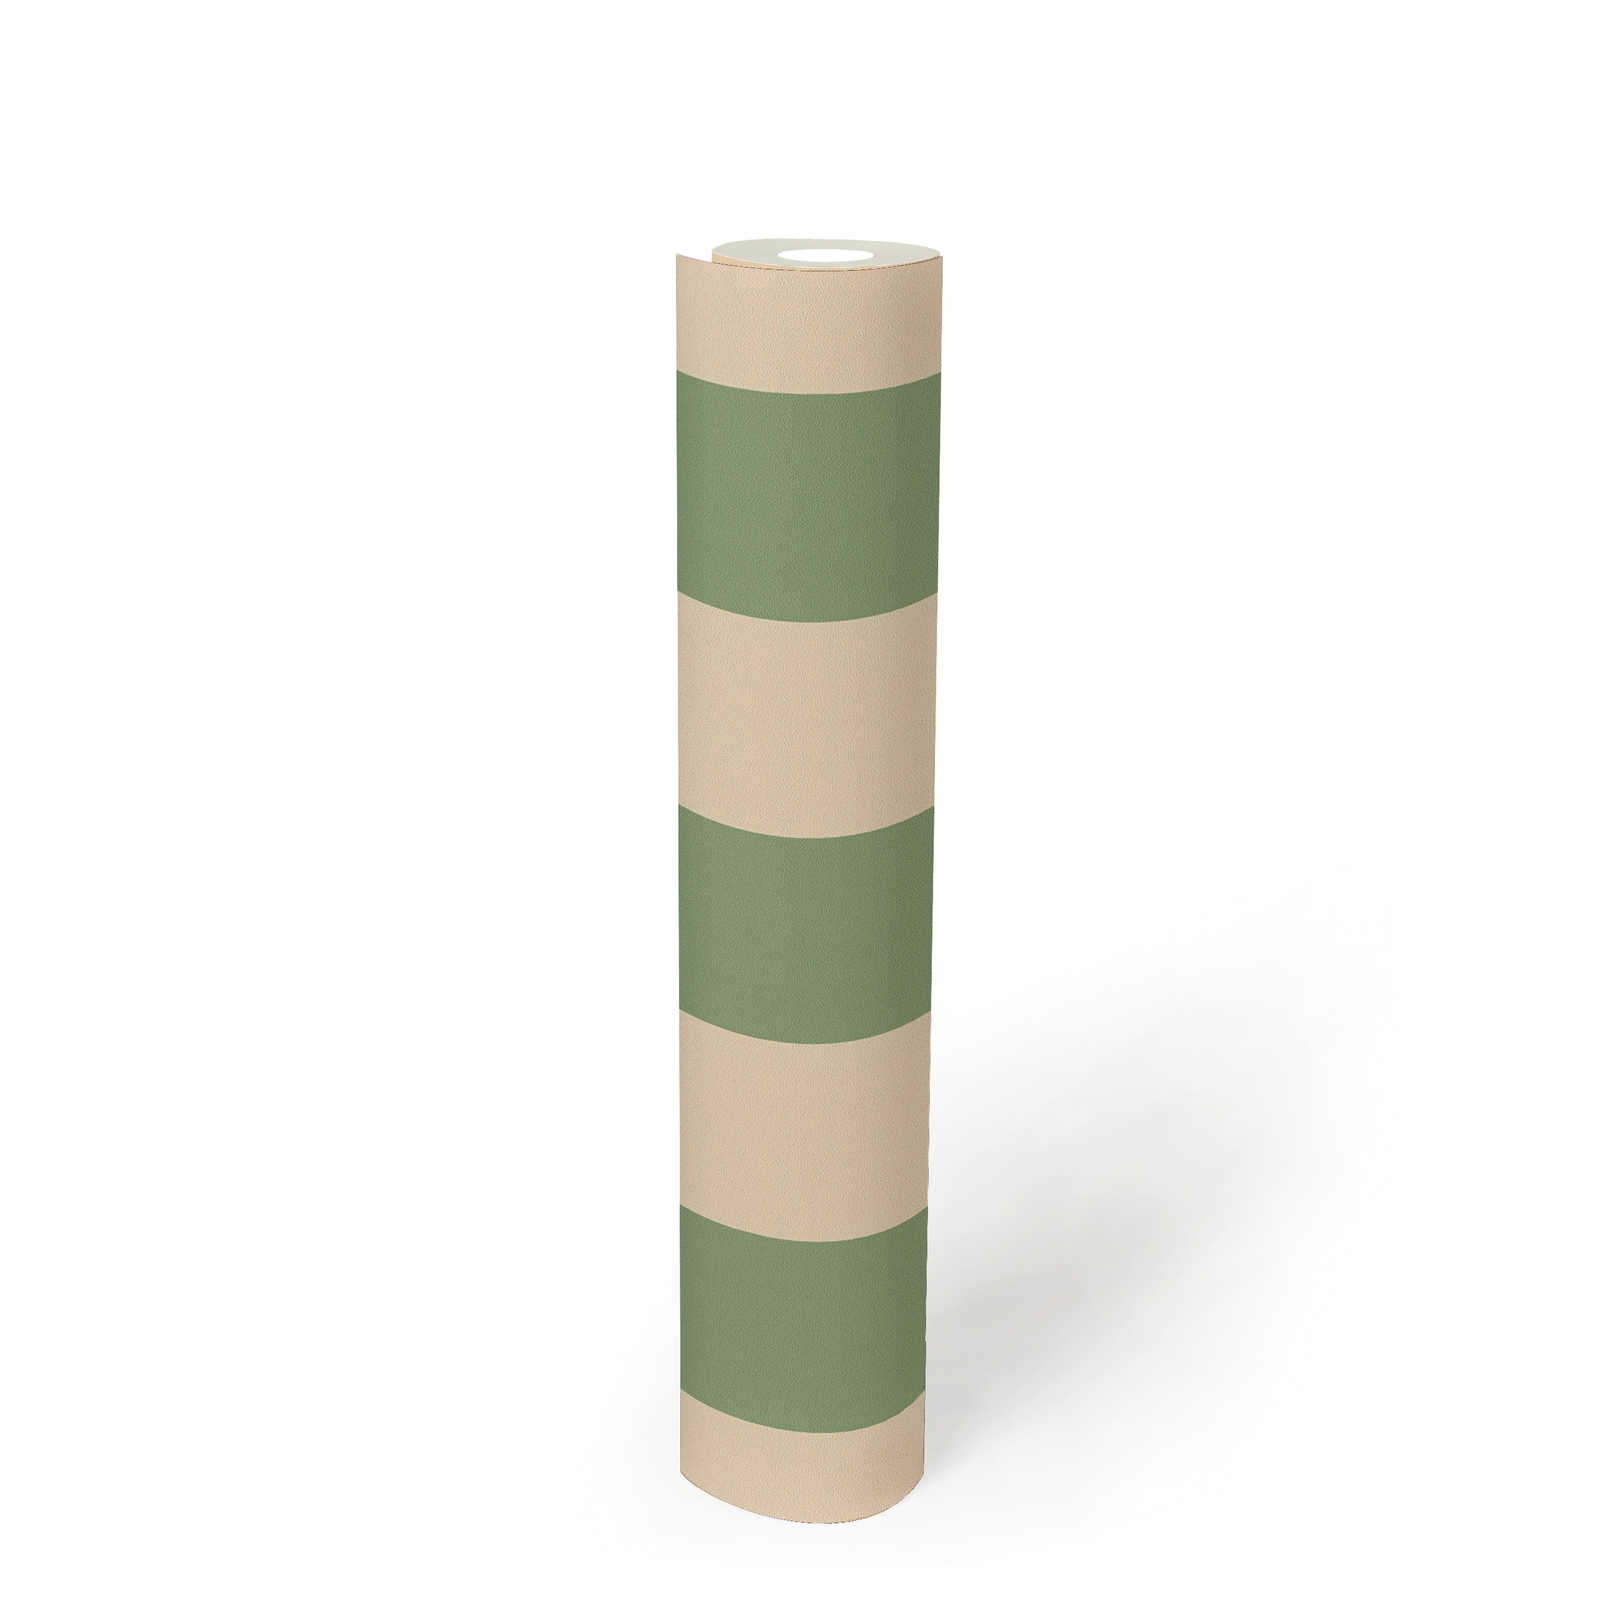             Carta da parati in tessuto non tessuto con strisce a blocchi e struttura leggera - beige, verde
        